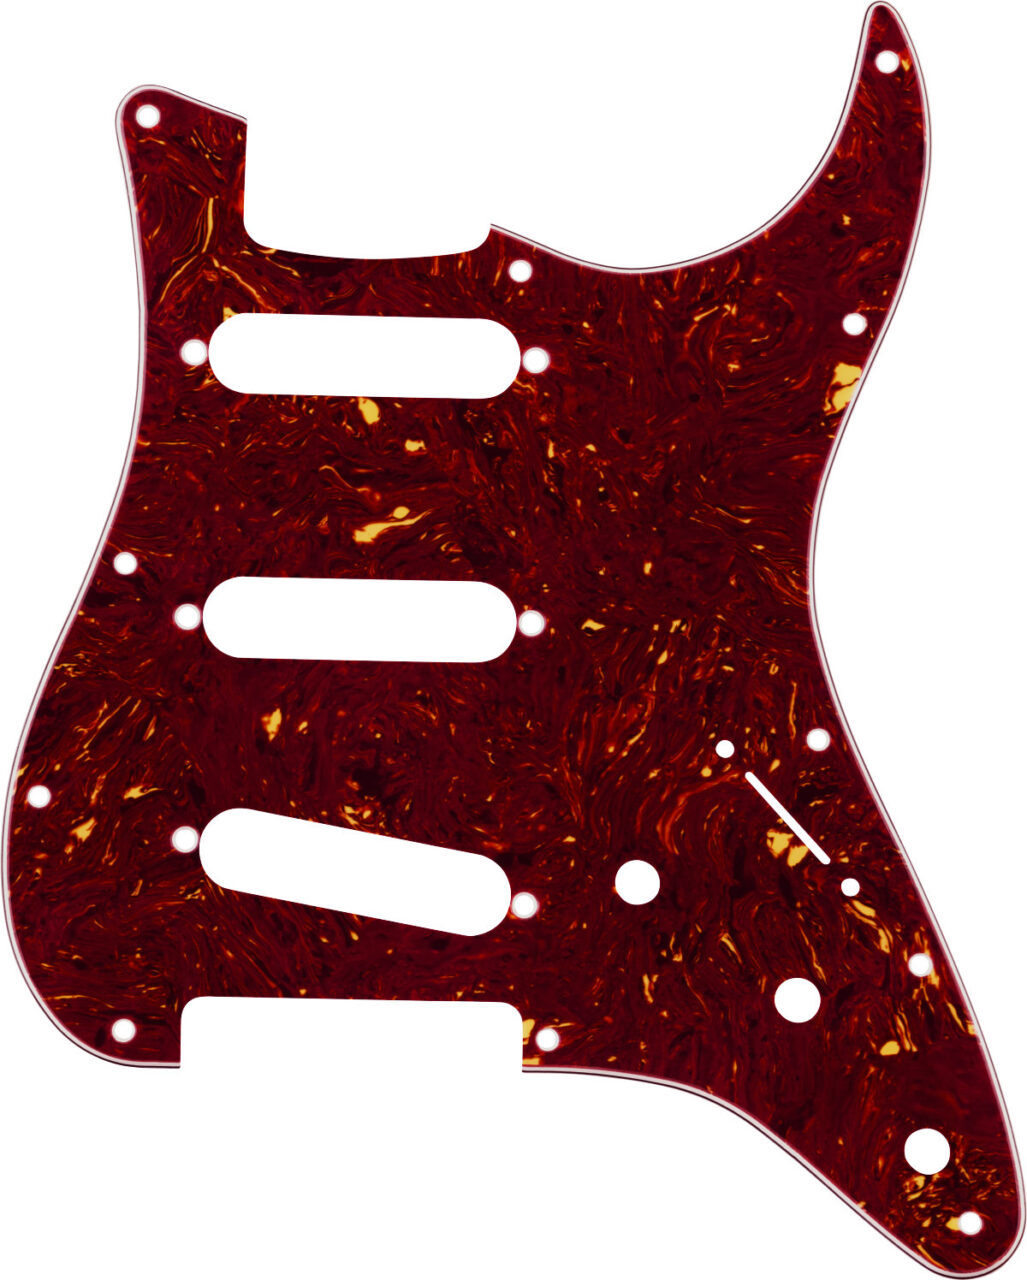 Fender Landau Coma Stratocaster SSS Pickguard